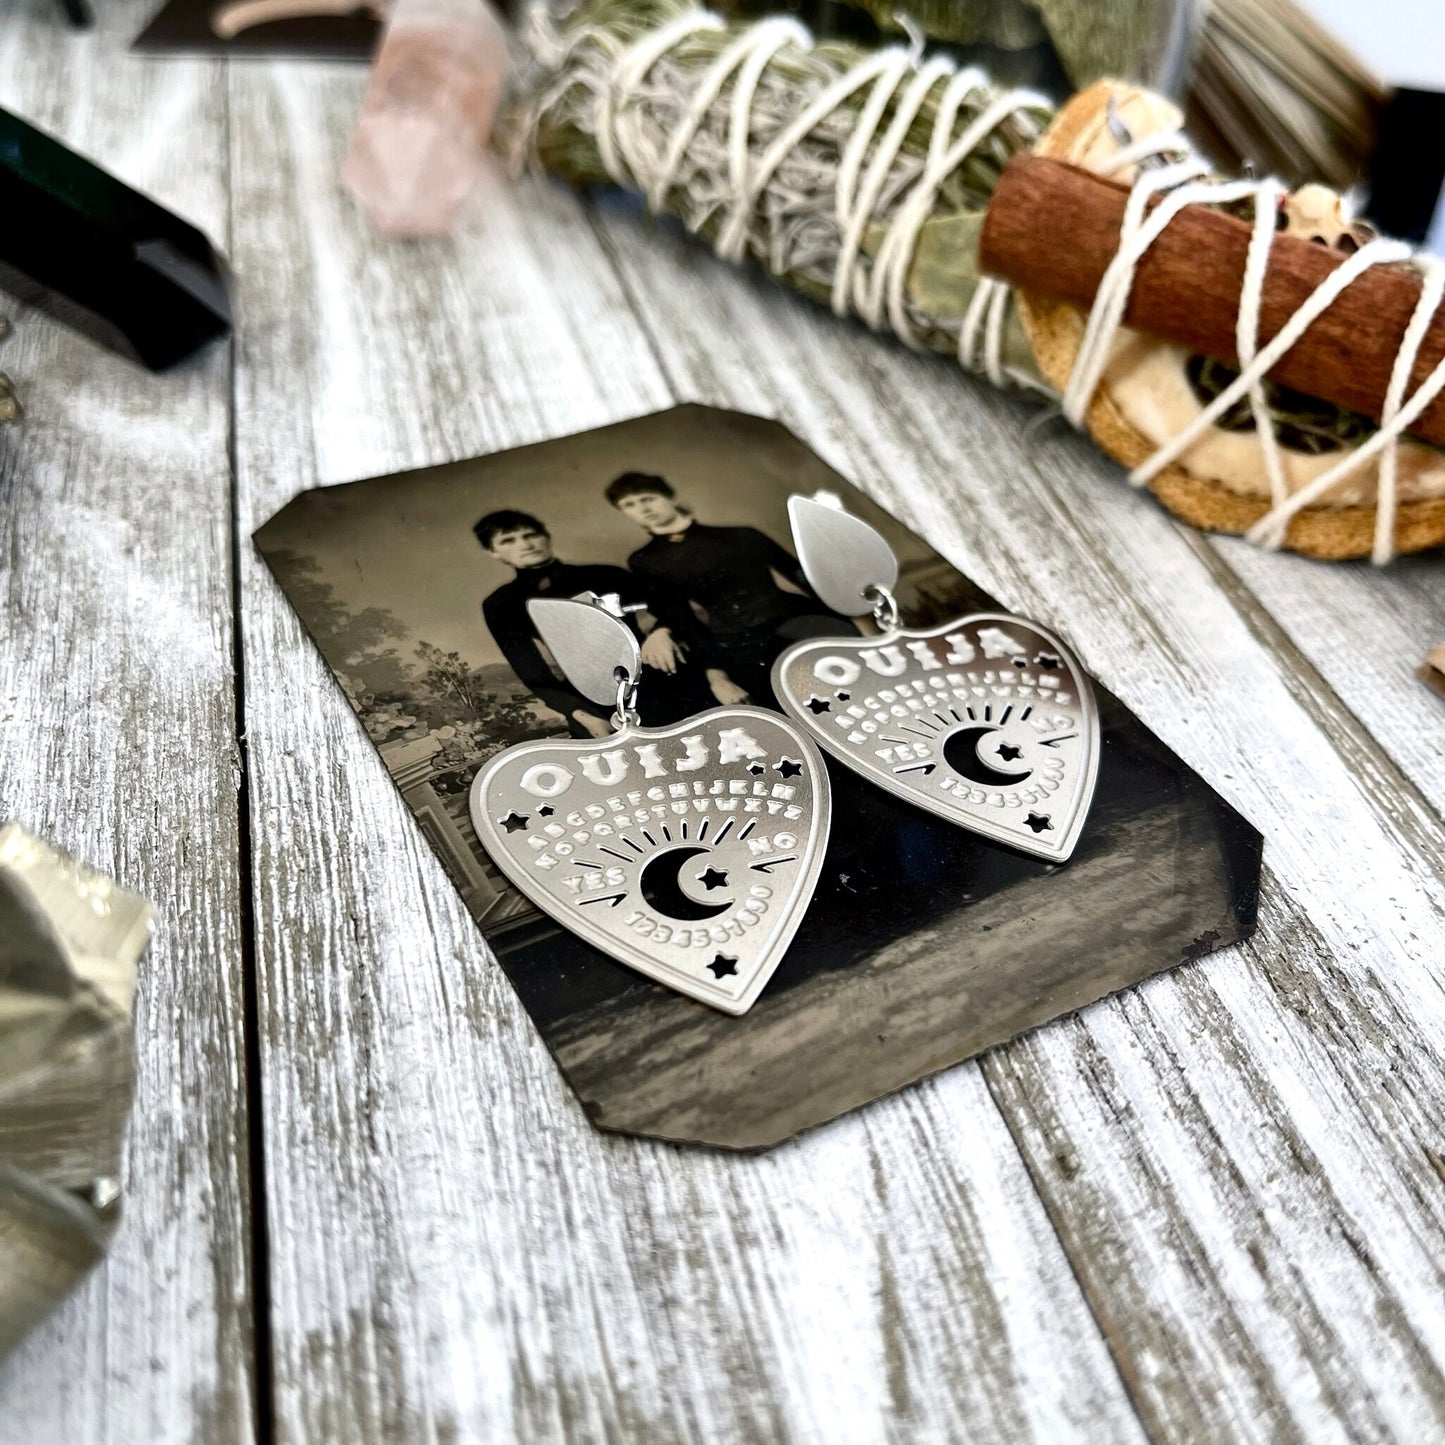 Teardrop Post Ouija Board Planchette Crescent Moon Earrings/ Sterling Silver & Stainless Steel - Foxlark Crystal Jewelry